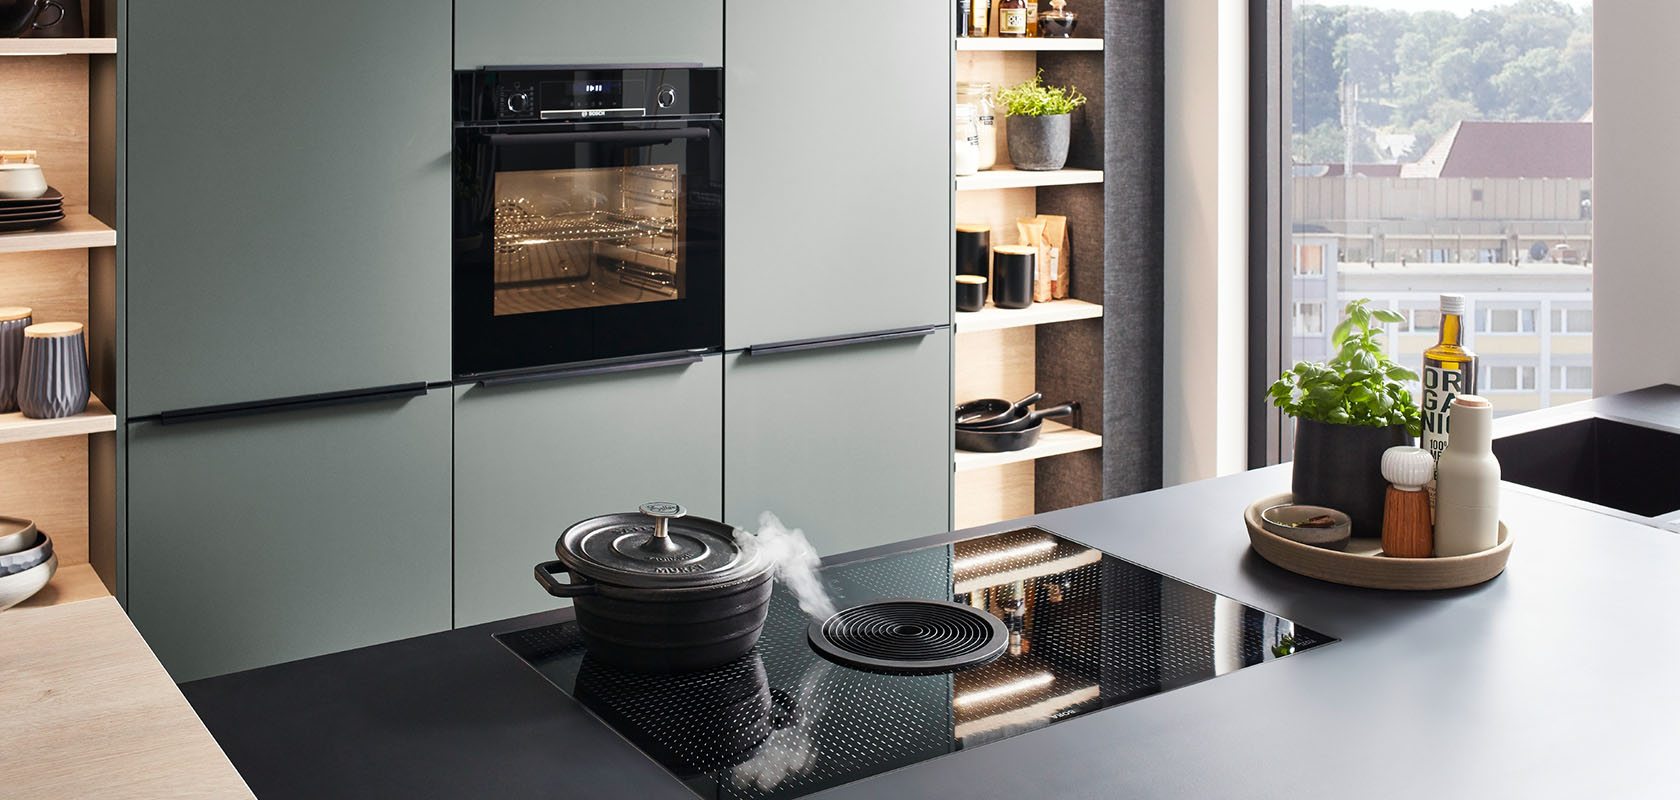 Intérieur de cuisine moderne avec des armoires vertes élégantes, des appareils intégrés et une table de cuisson à induction sur un comptoir sombre, dégageant un style et une fonctionnalité contemporains.